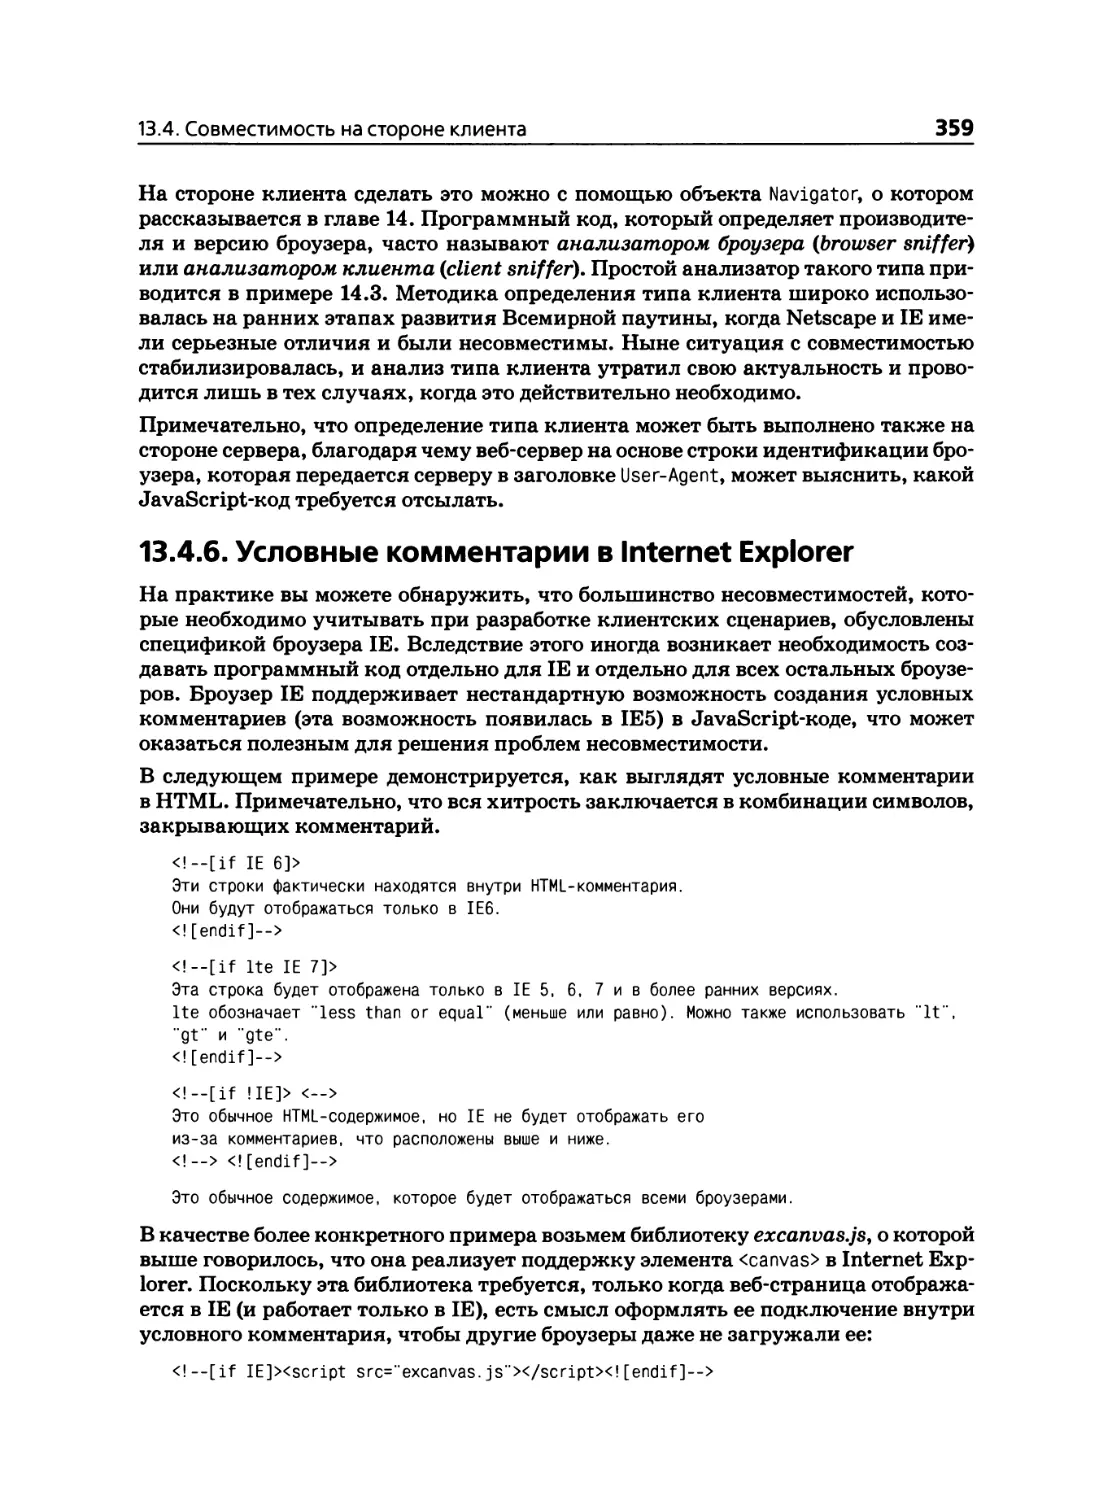 13.4.6. Условные комментарии в Internet Explorer